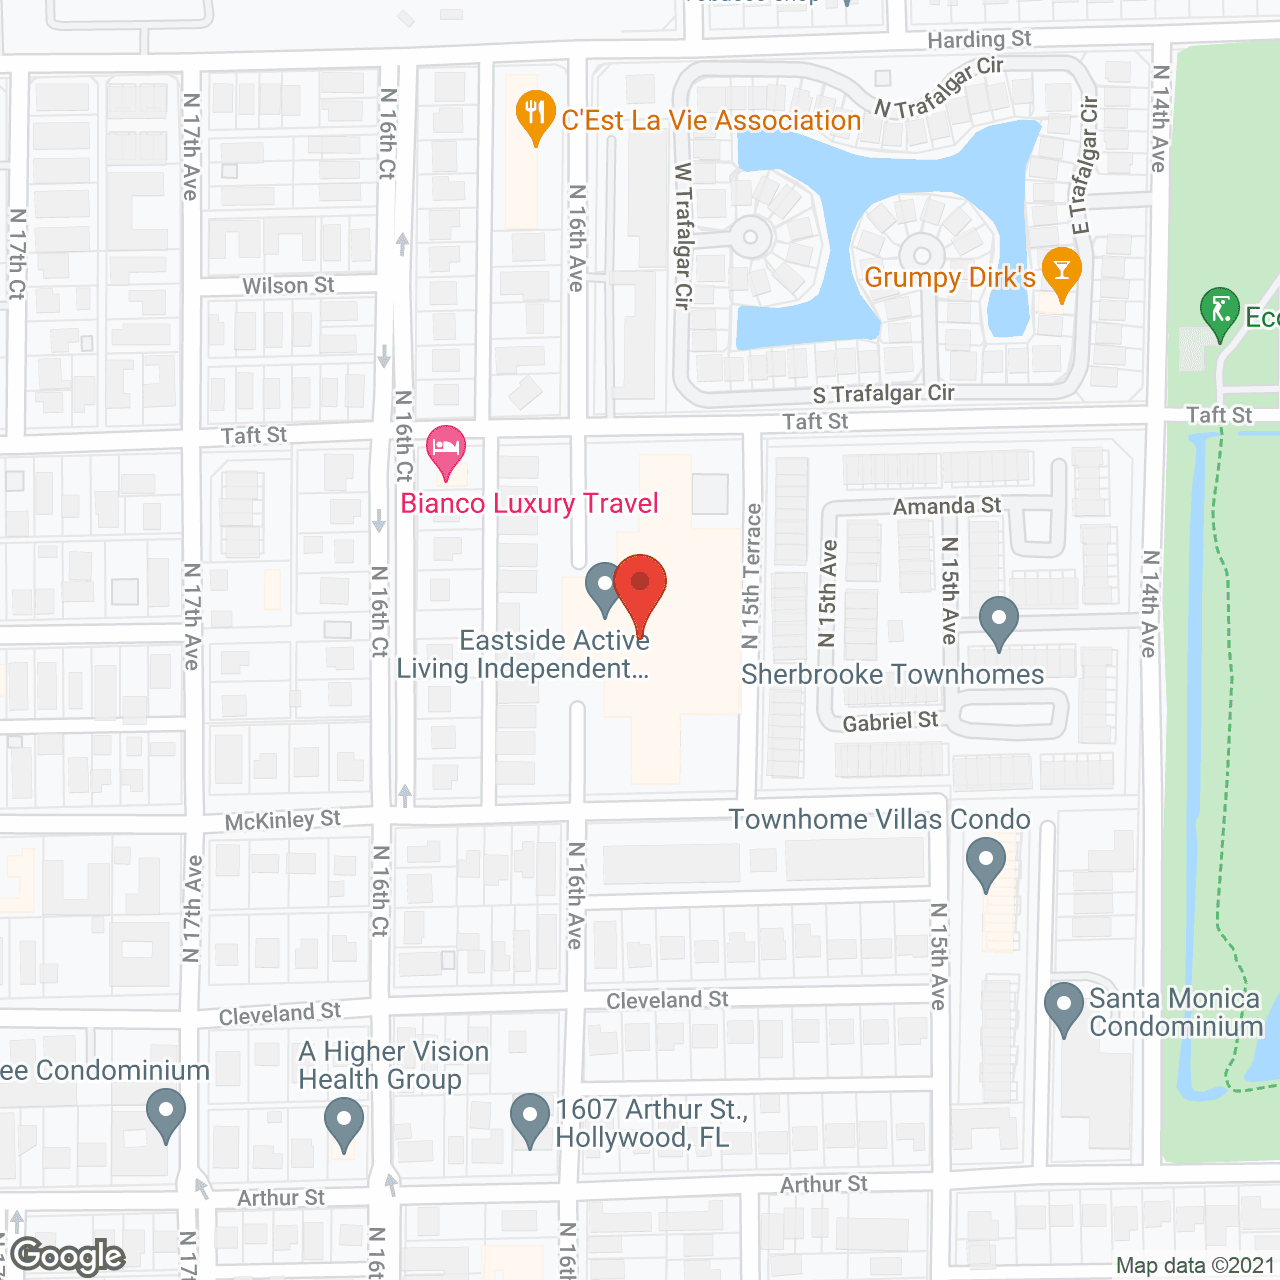 Nova Palms in google map